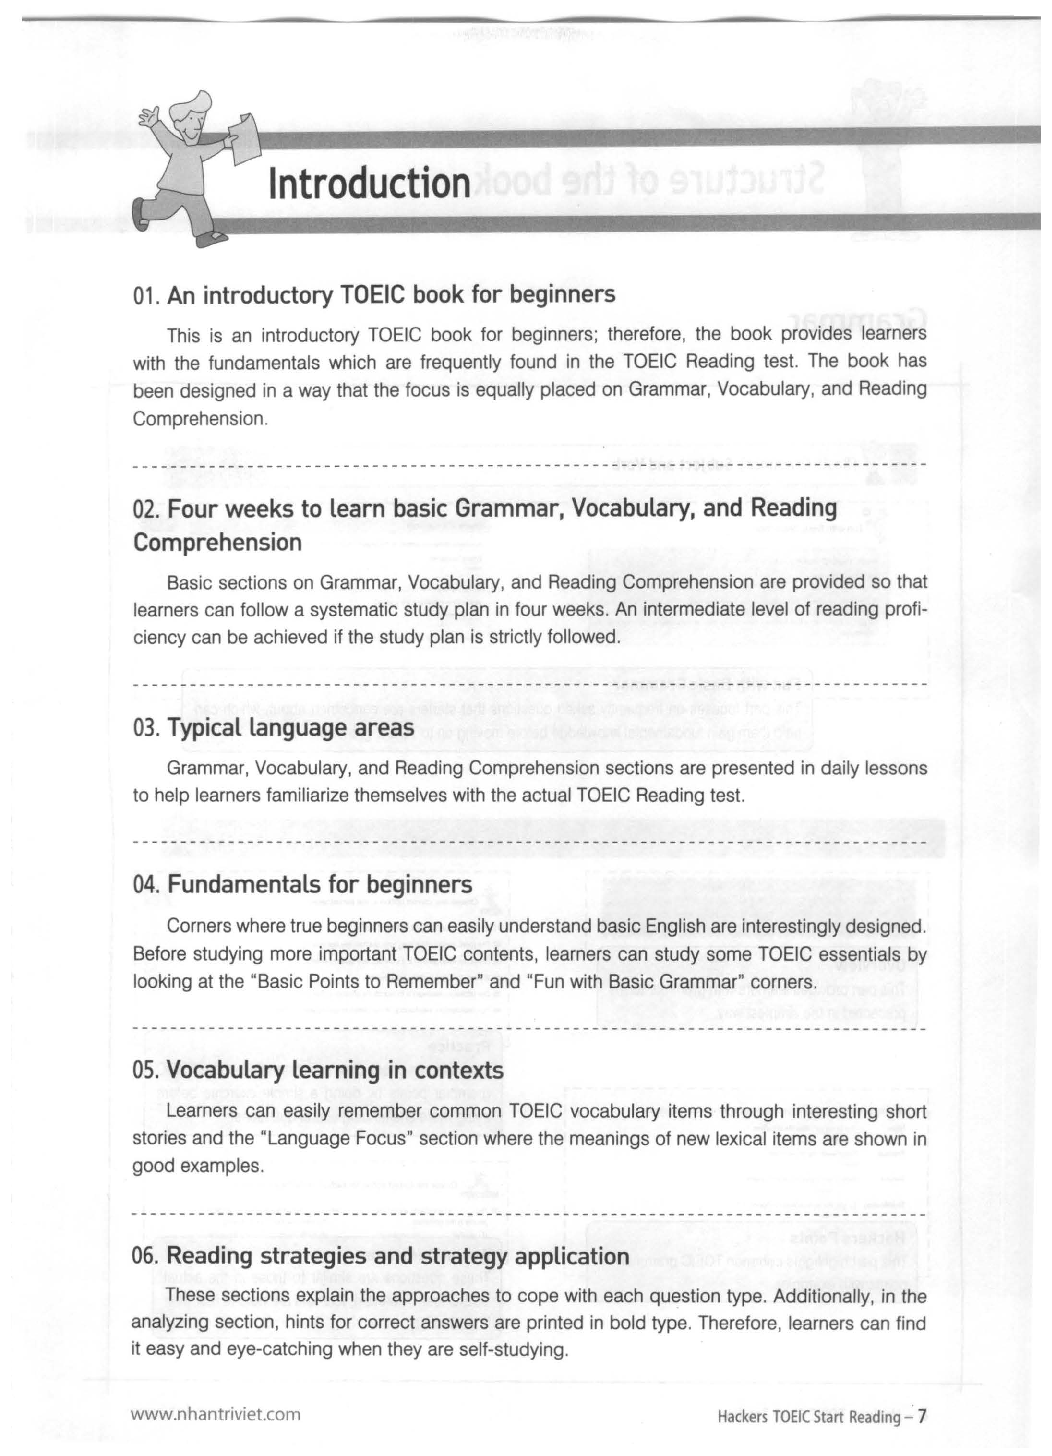 Sách Hacker TOEIC Reading | Xem online, tải PDF miễn phí (trang 5)